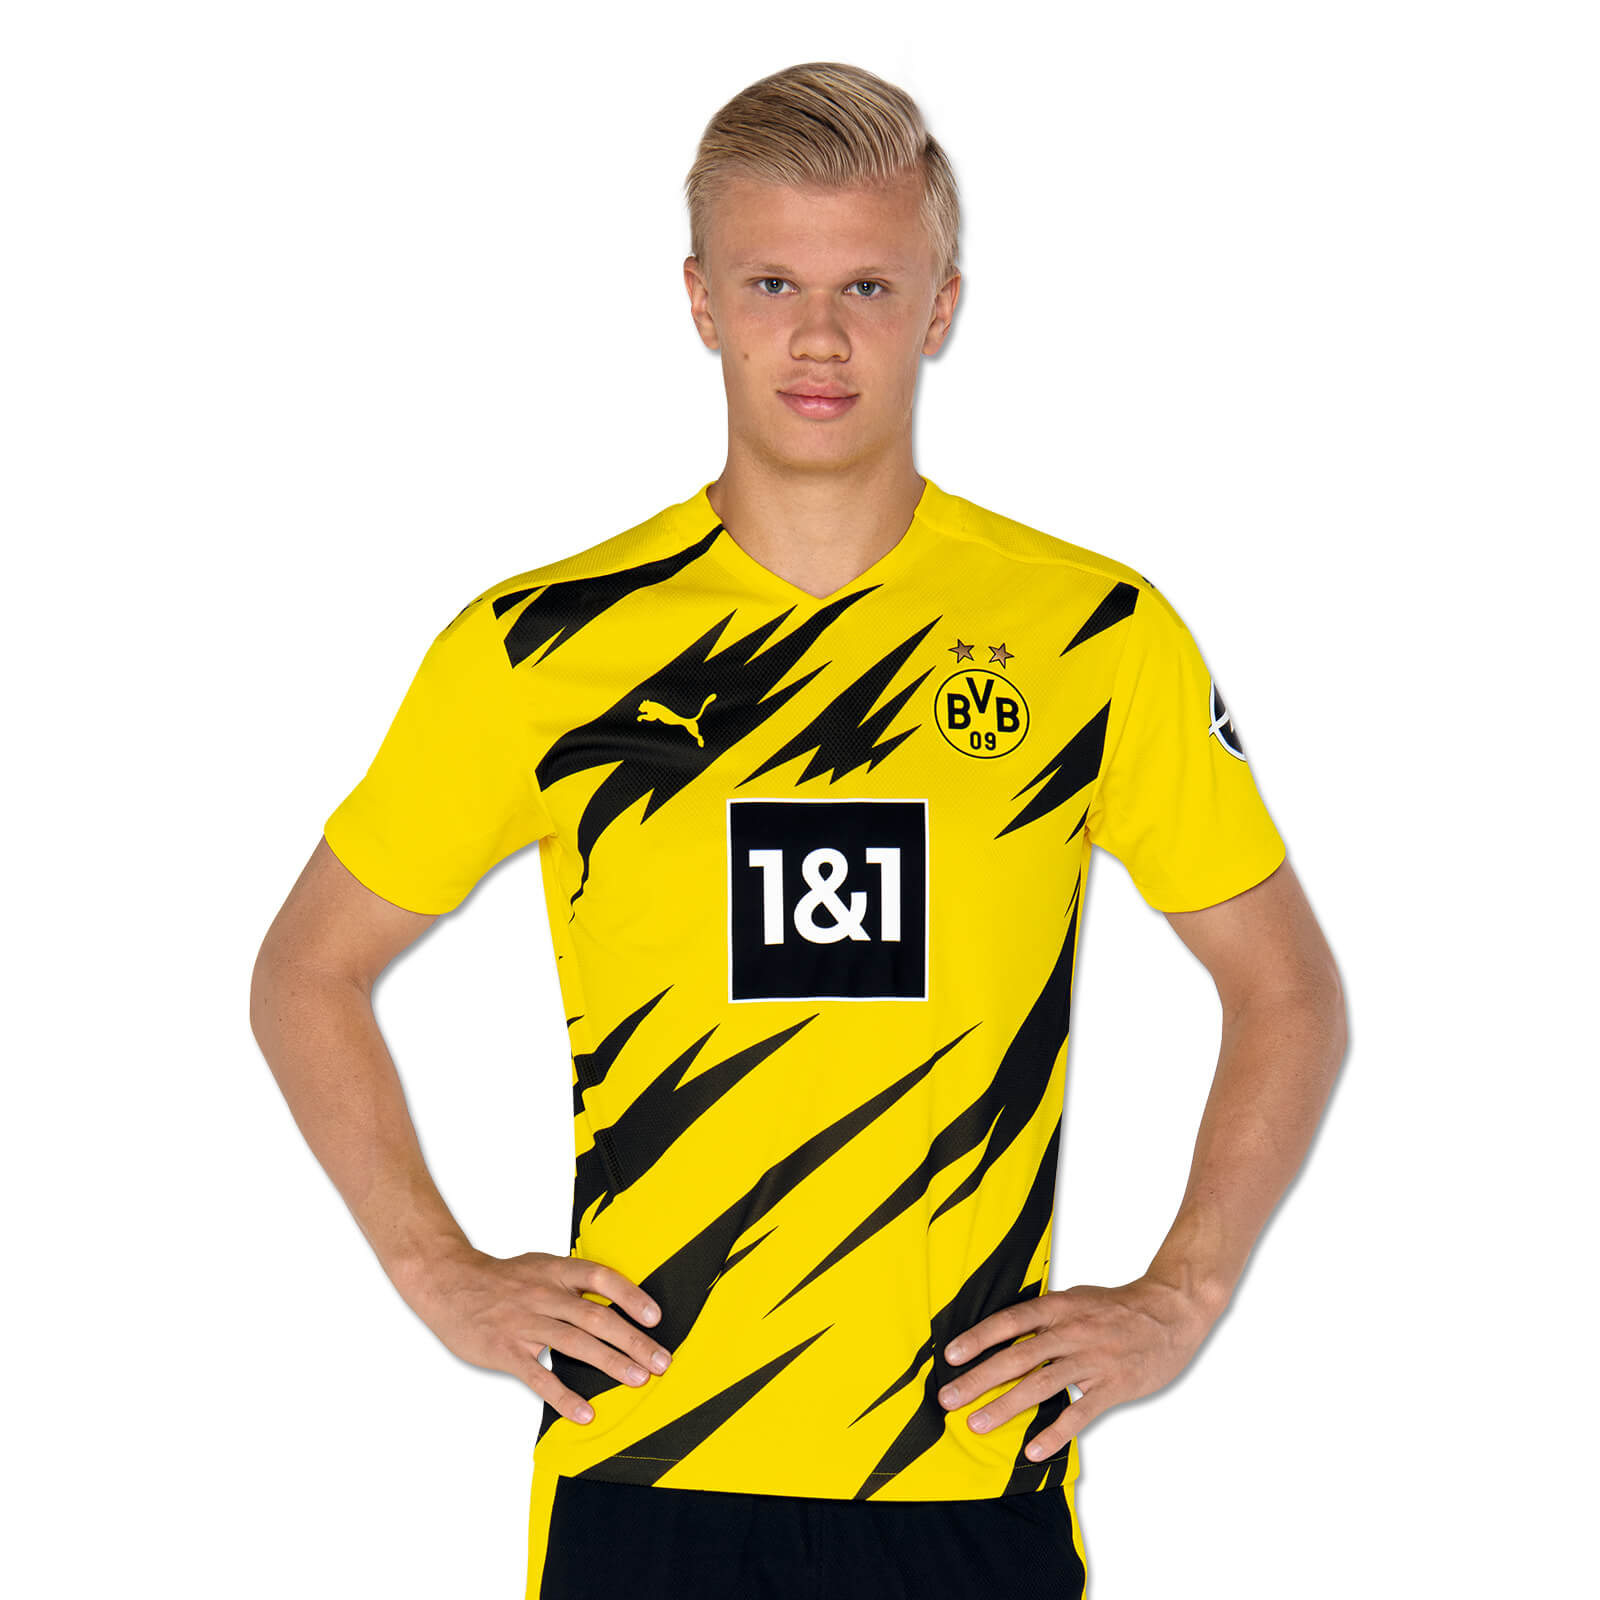 SportsCenter on X: El goleador está listo: Erling Haaland ya luce la nueva  camiseta del Borussia Dortmund. ¿Qué te parece?  / X